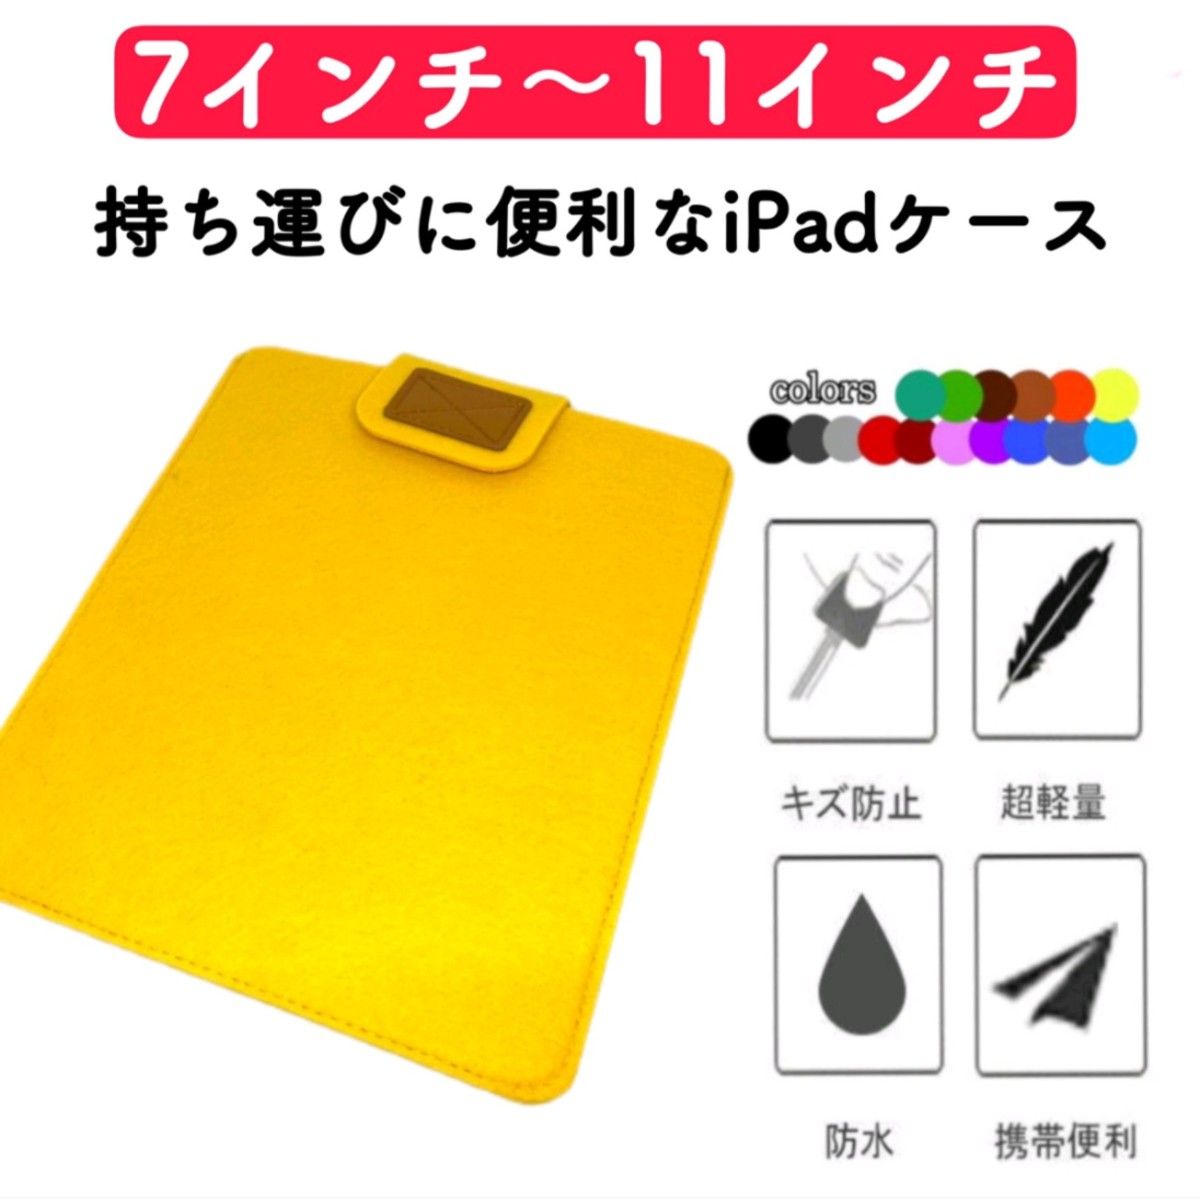 iPadケース タブレットケース 第8世代 第9世代 11インチまで対応 フェルト 保護カバー 薄型 軽量 通学用 キッズ 激安